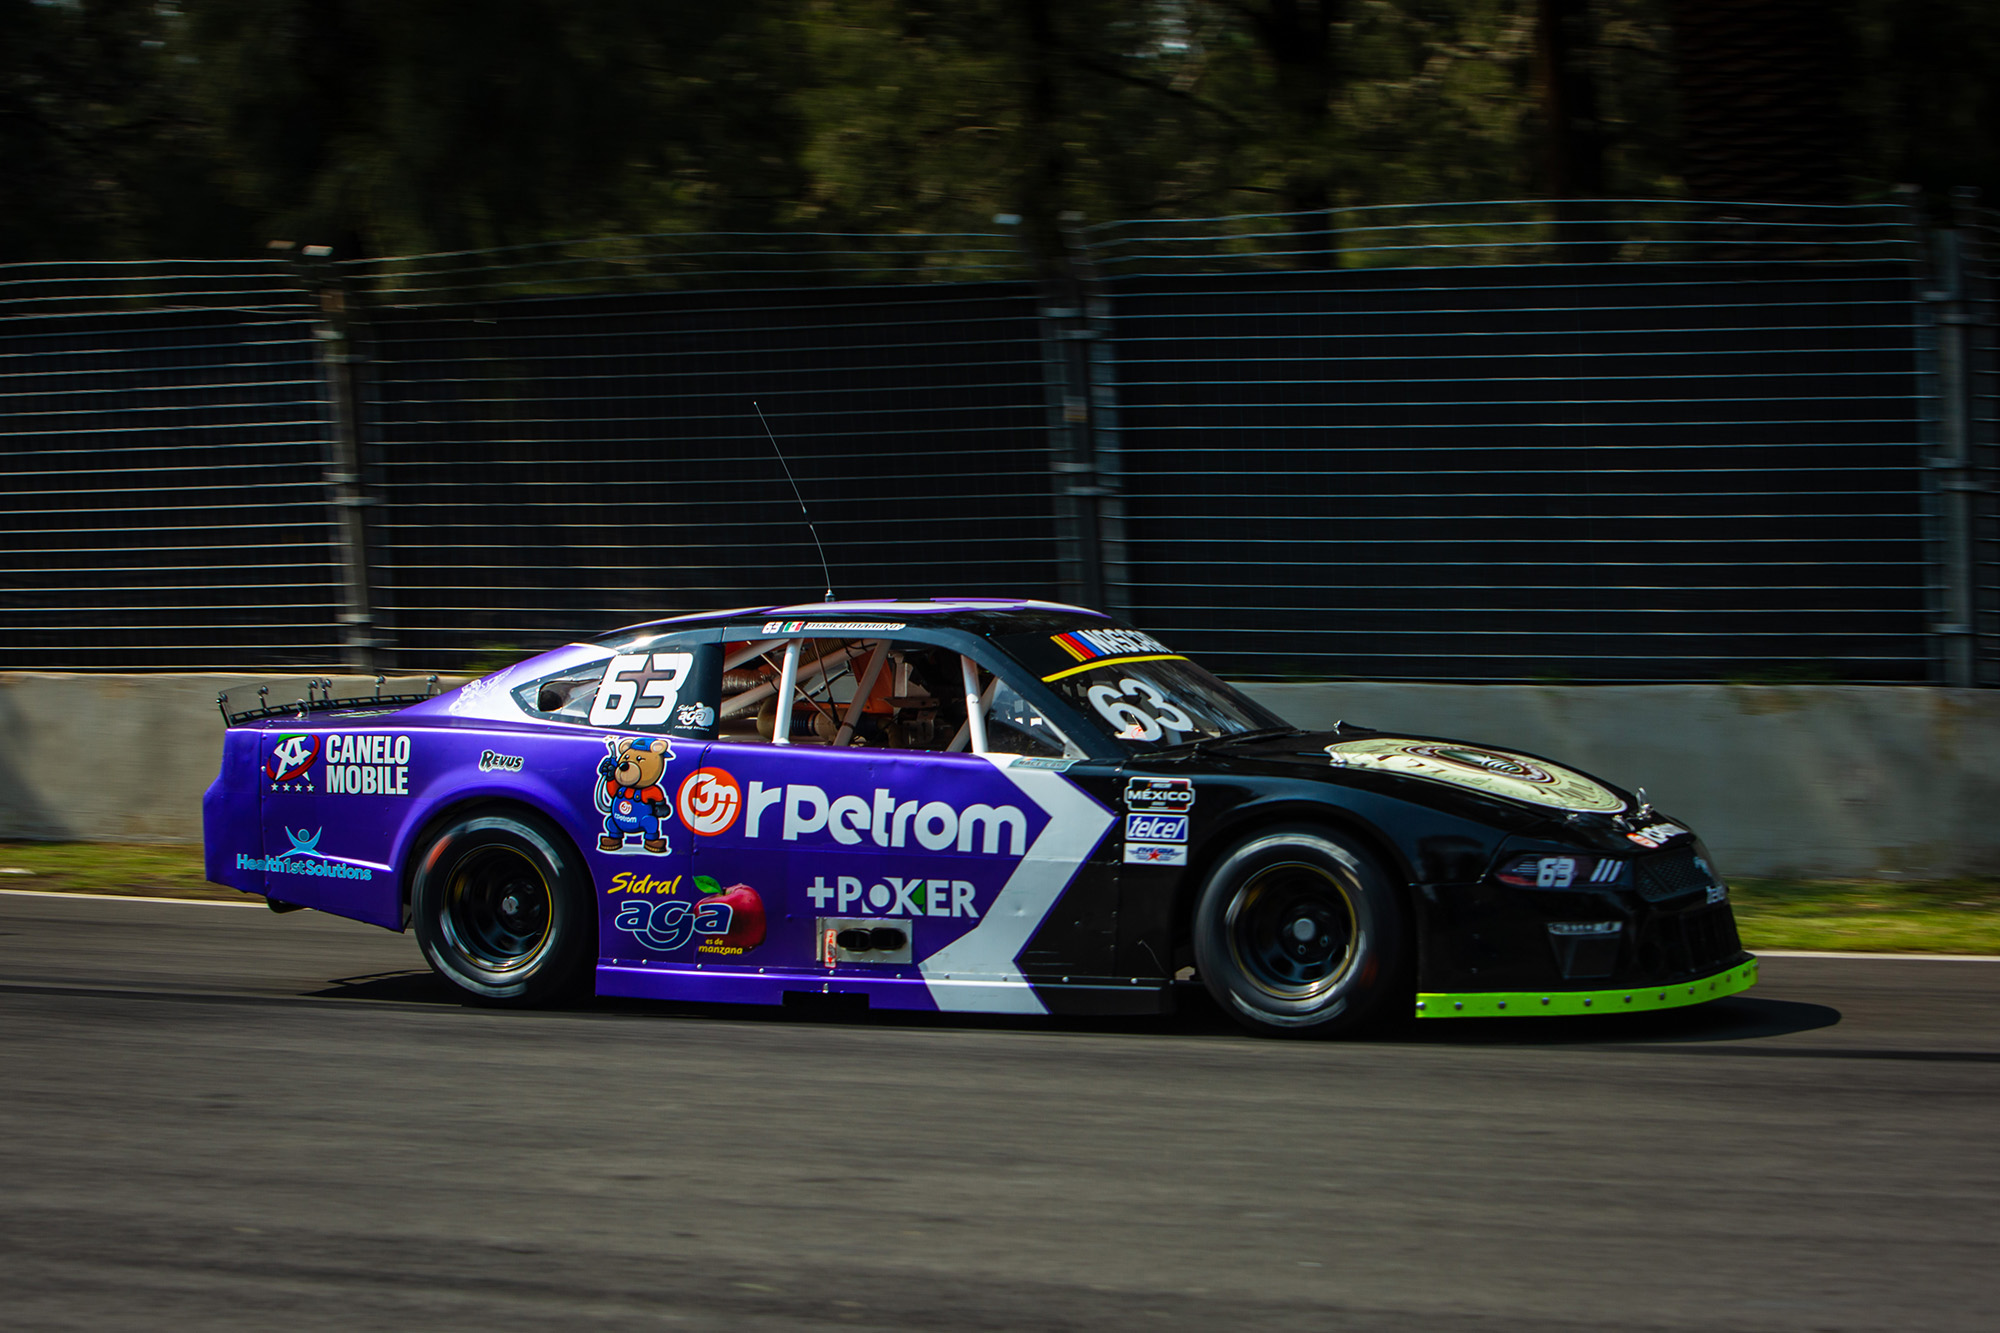 El Sidral Aga Racing Team, rescató Top-10 de NASCAR México en el Autódromo Hermanos Rodríguez